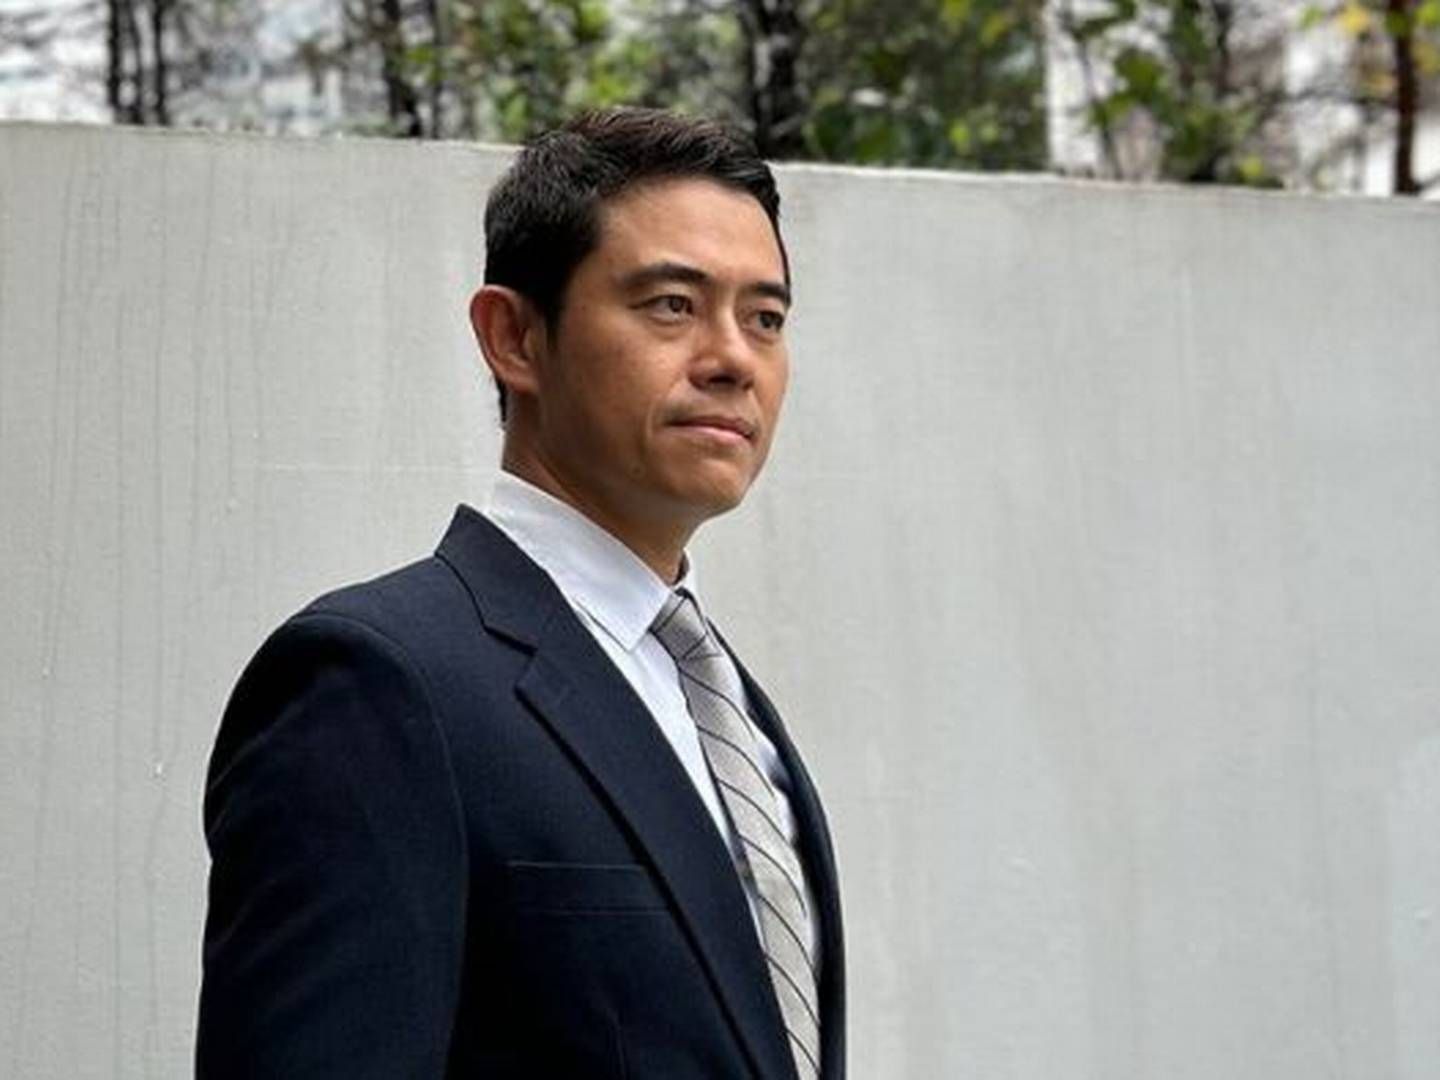 Tilbage i 2007 tilbragte Ivan Chia ifølge sin Linkedin-profil et år hos Vestas i Singapore som juridisk rådgiver. | Foto: Pr